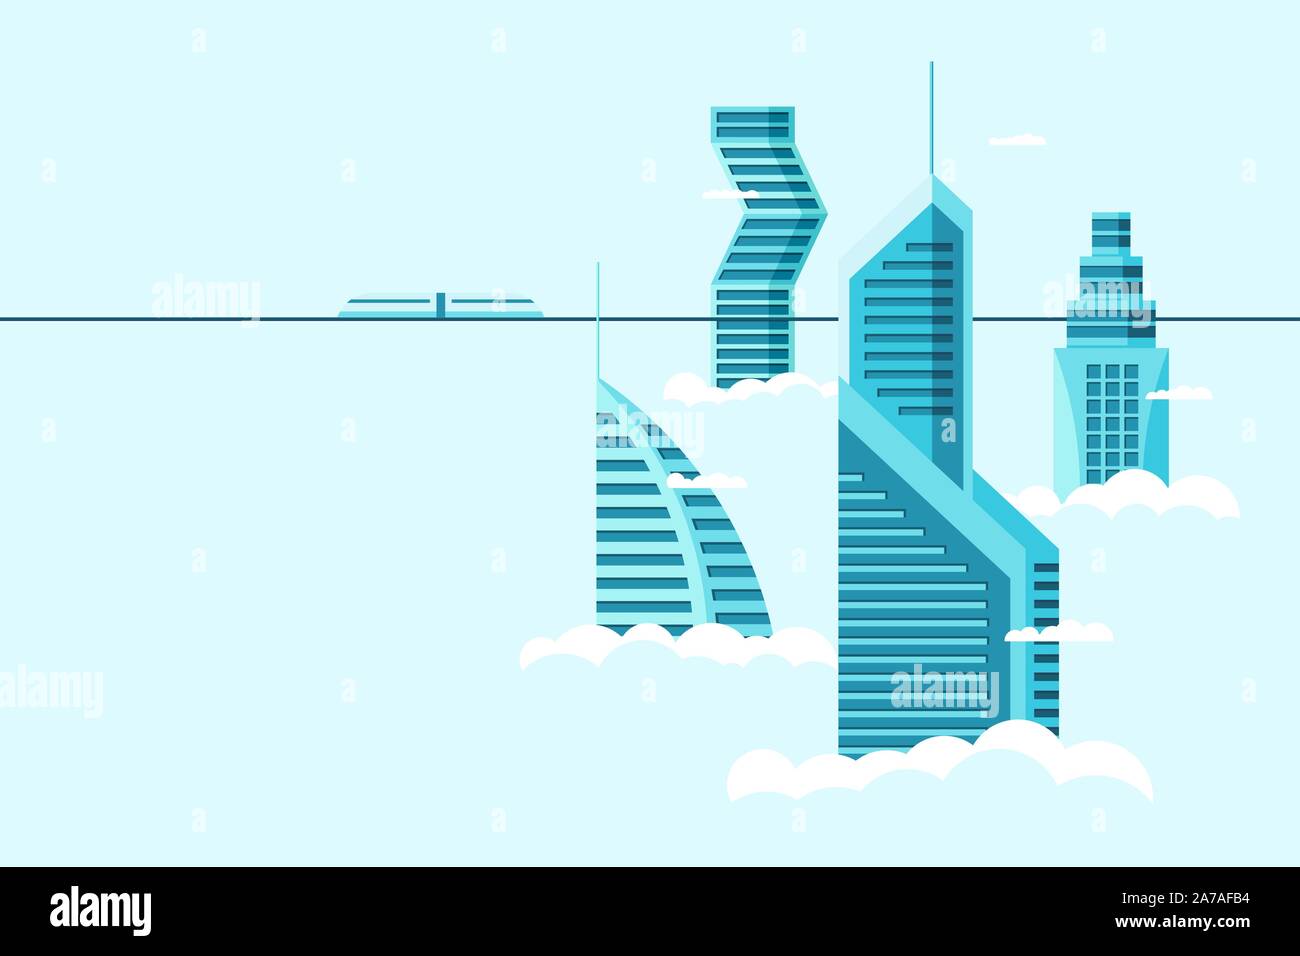 Detaillierte zukünftige Stadt mit unterschiedlicher Architektur hohe Gebäude Wolkenkratzer Wohnungen über Wolken. Futuristische Stadt mit Stadtbild und Einschienenbahn. Vektor-Immobilien-Bau über Himmel Illustration Stock Vektor